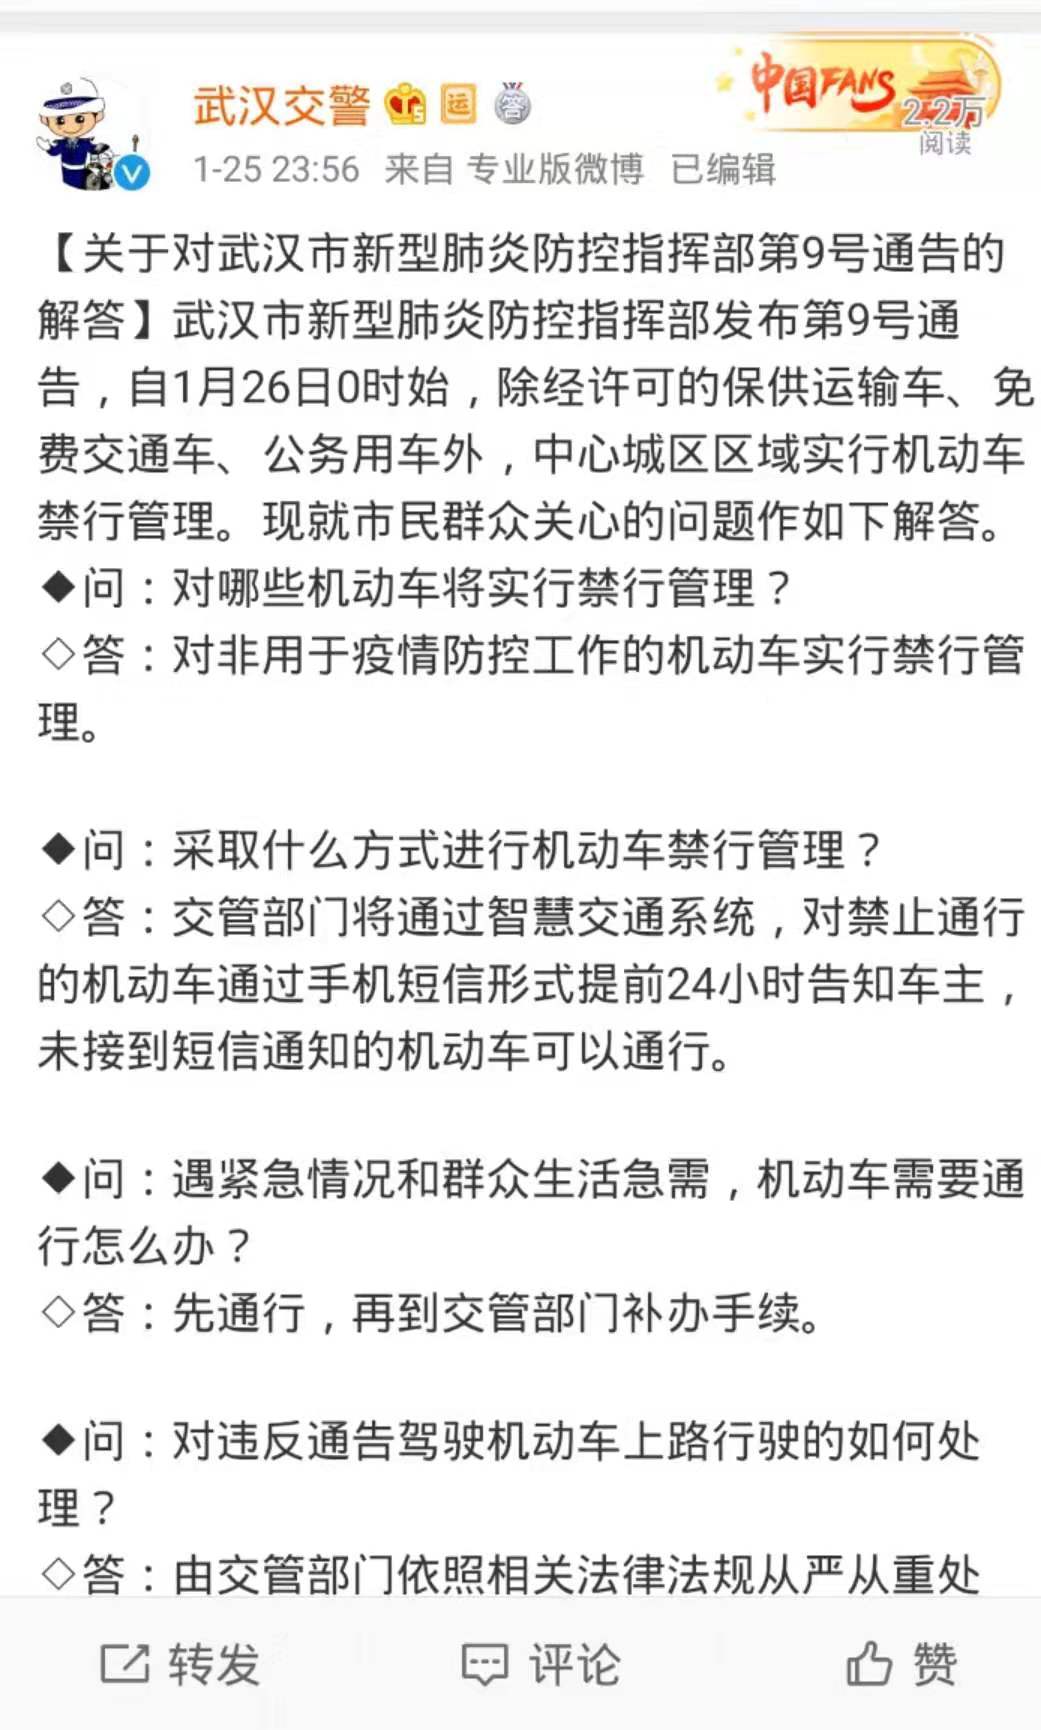 26日武汉机动车禁行管控解读：未接到短信通知的机动车可通行